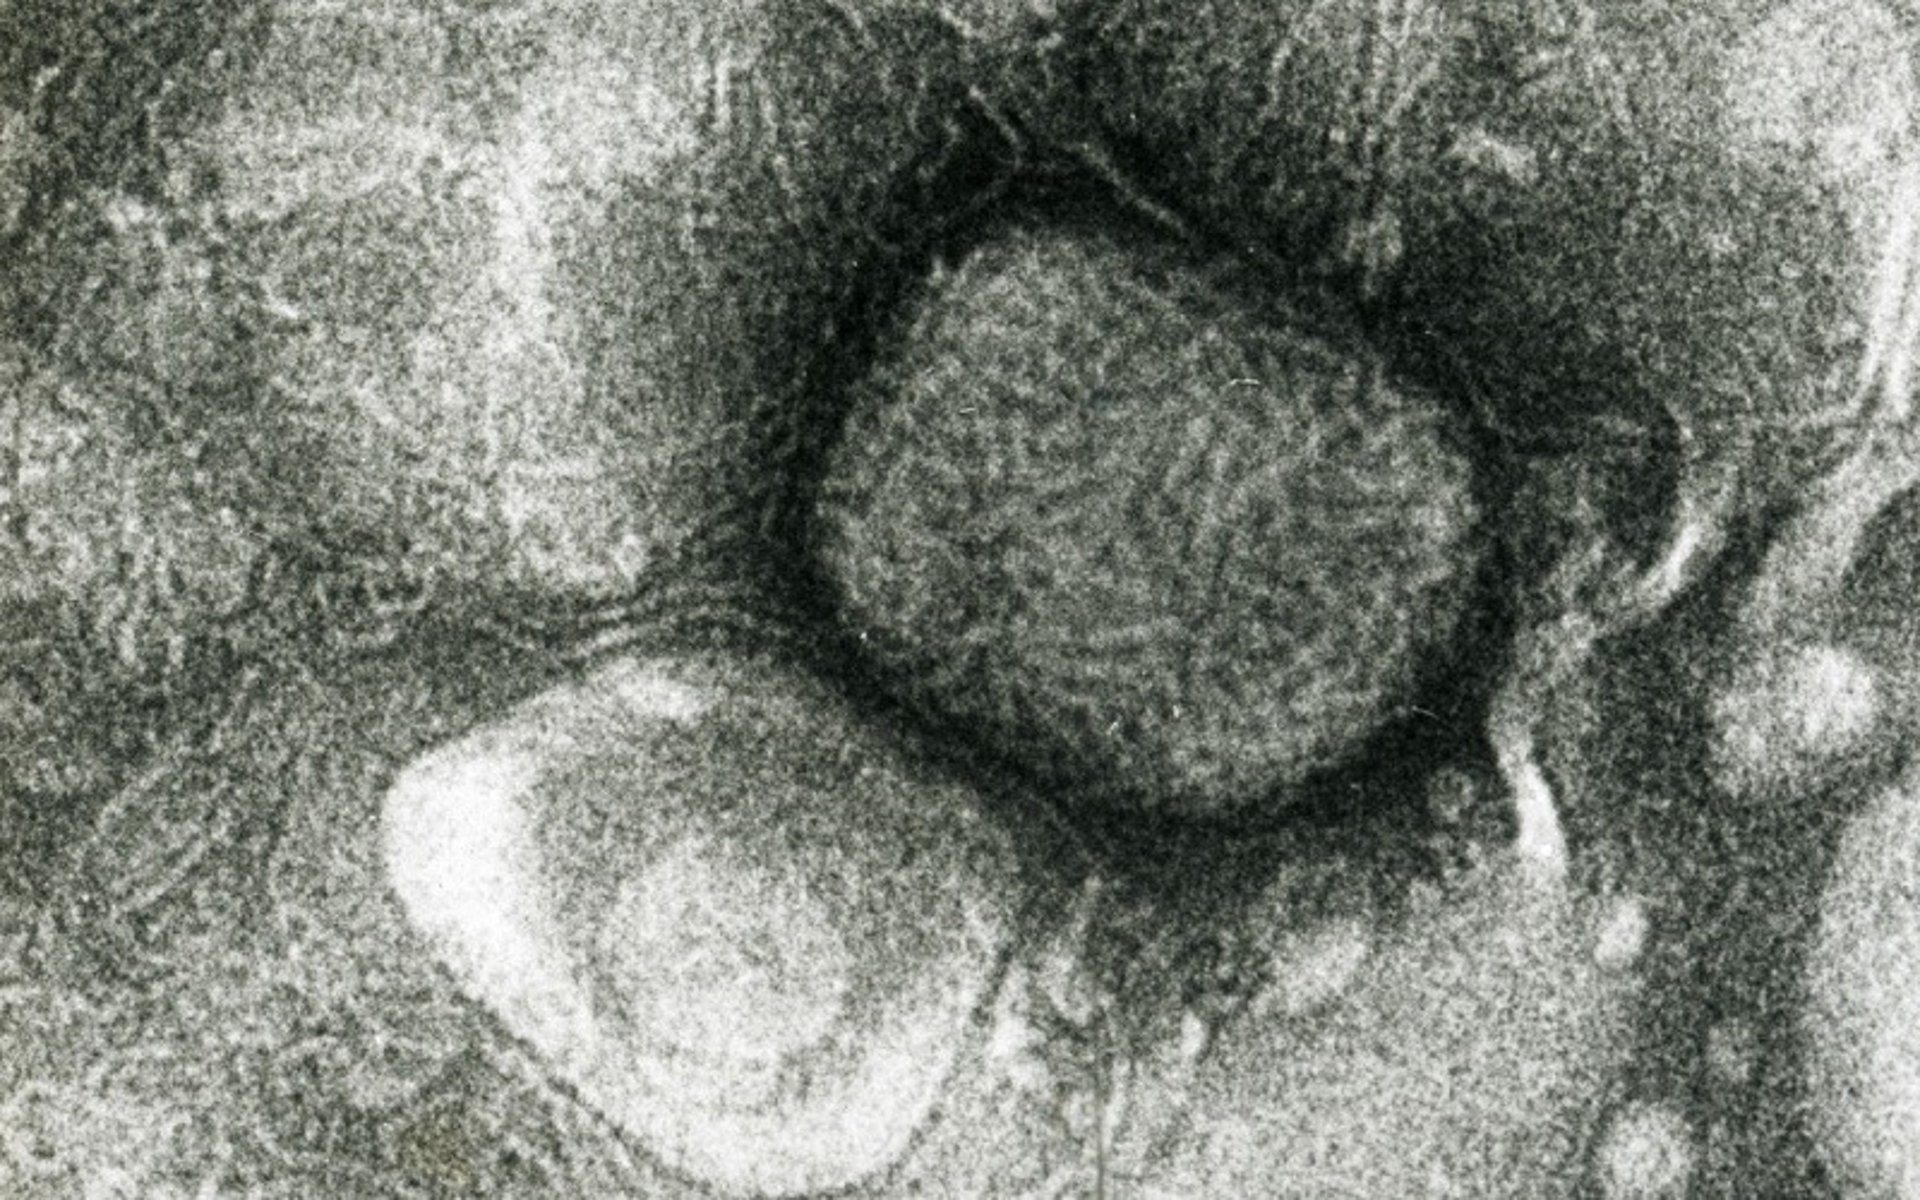 Sheeppox virus